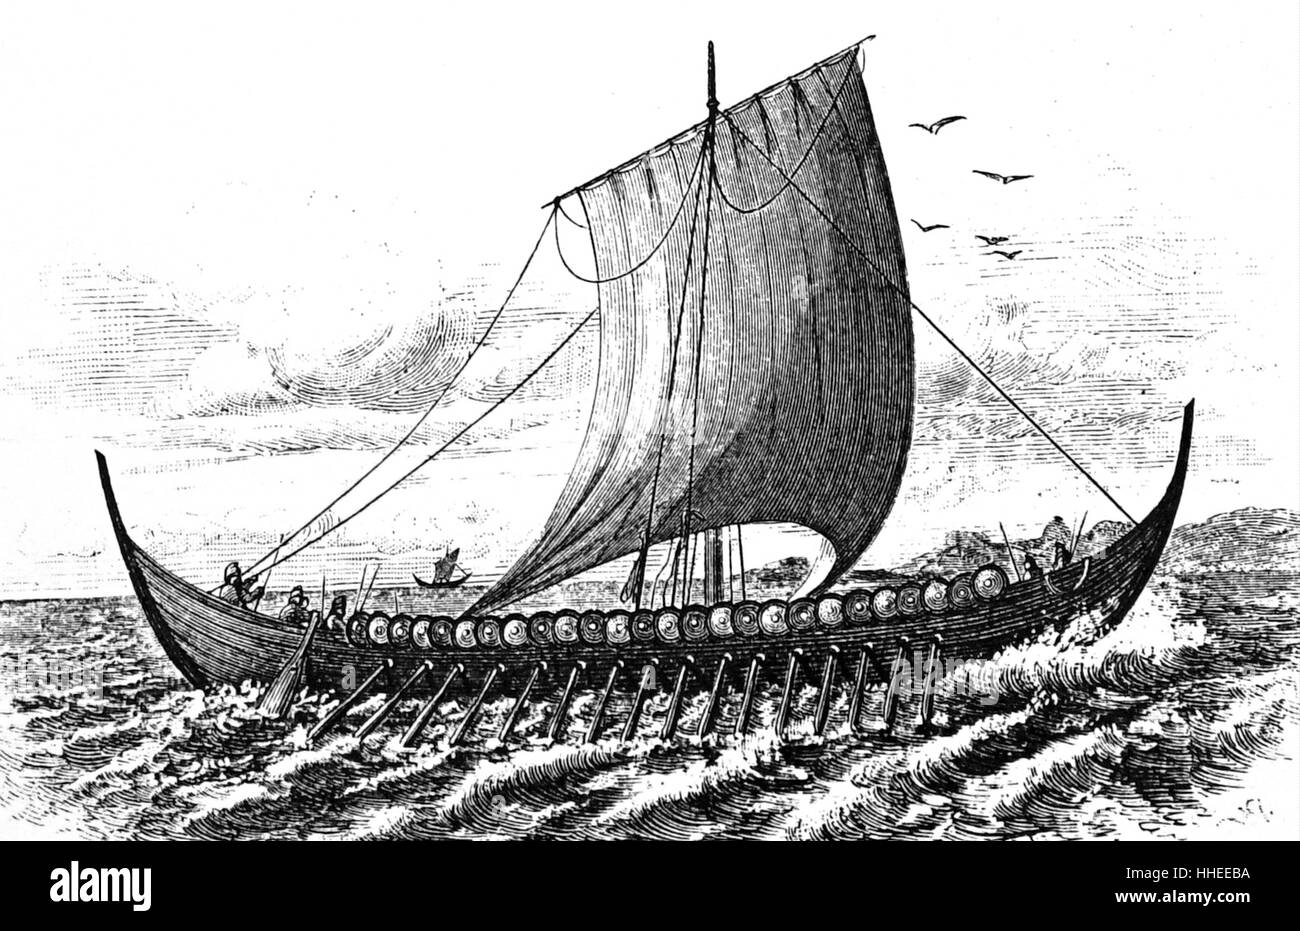 Gravure d'un bateau viking, les navires de conception unique, construit par les Vikings au cours de l'ère viking. En date du 10e siècle Banque D'Images